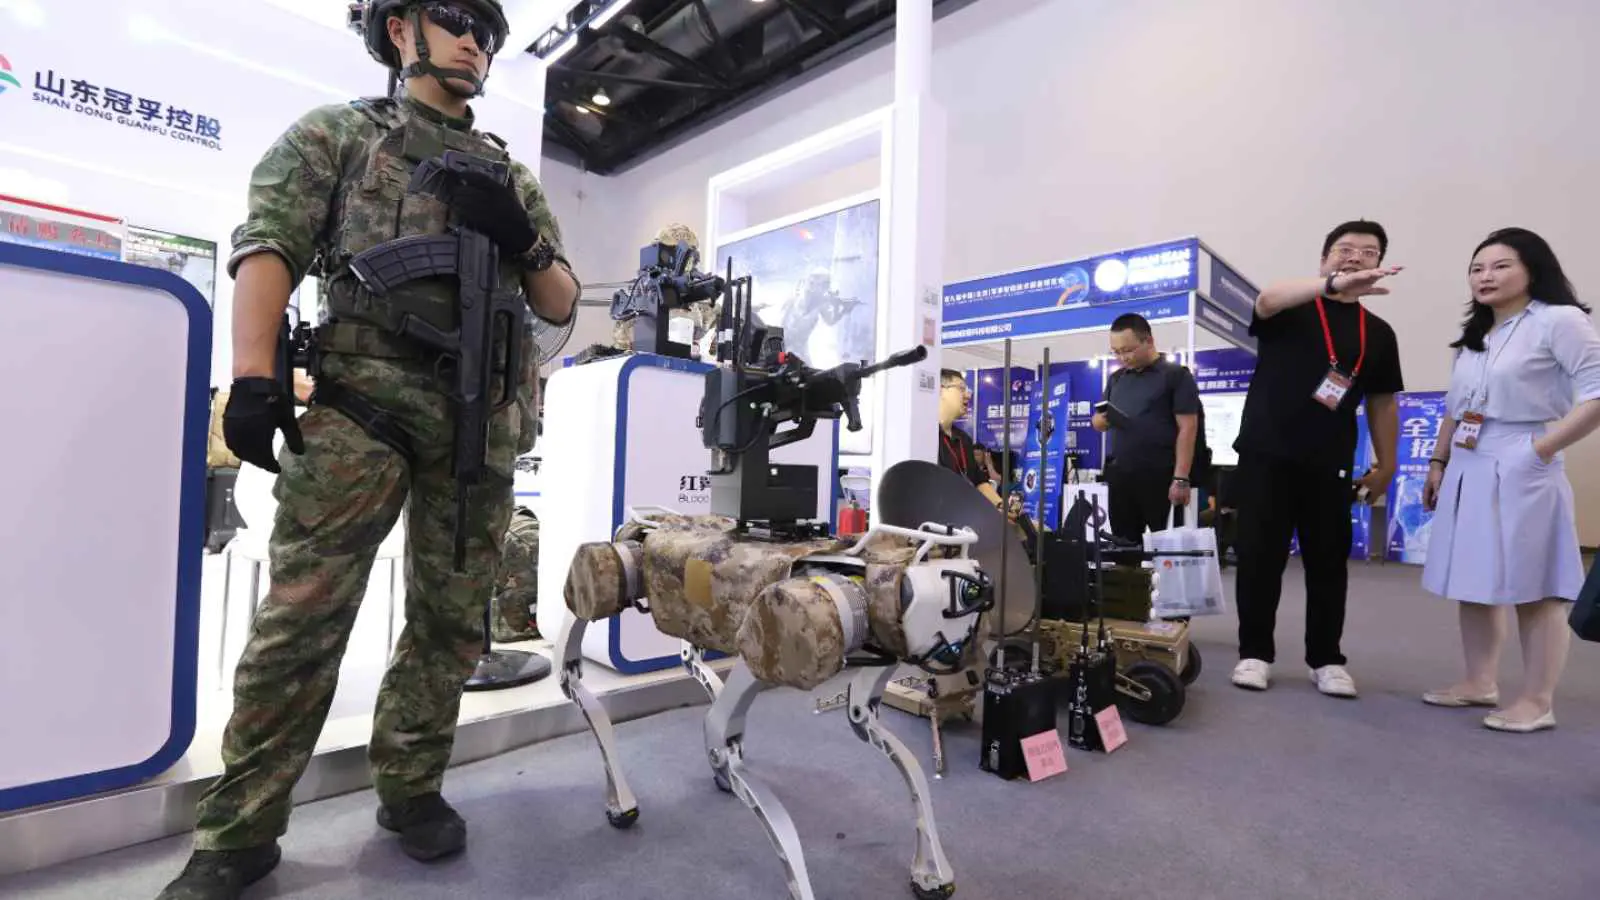 "تهديد خطير".. نائب أمريكي يحذر من كلاب صينية تعمل بالذكاء الاصطناعي